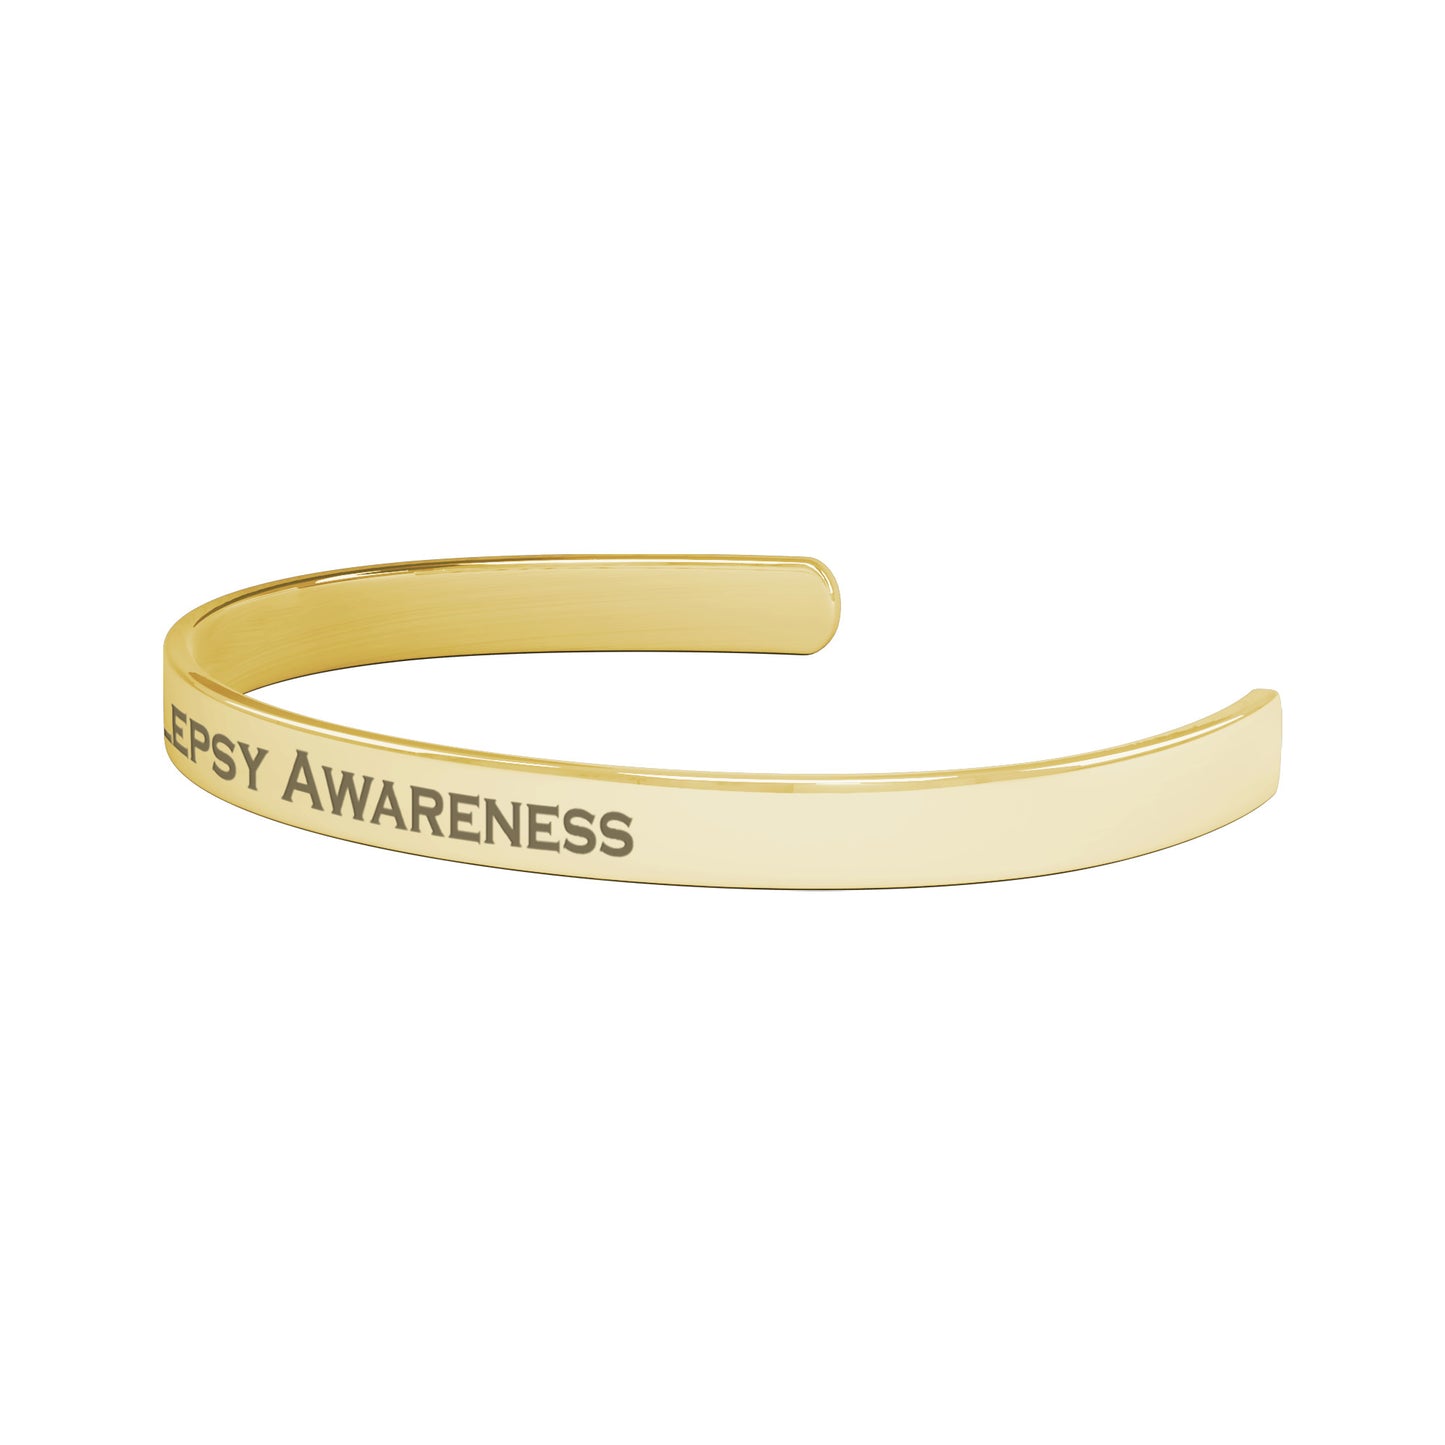 Personalized Epilepsy Awareness Cuff Bracelet